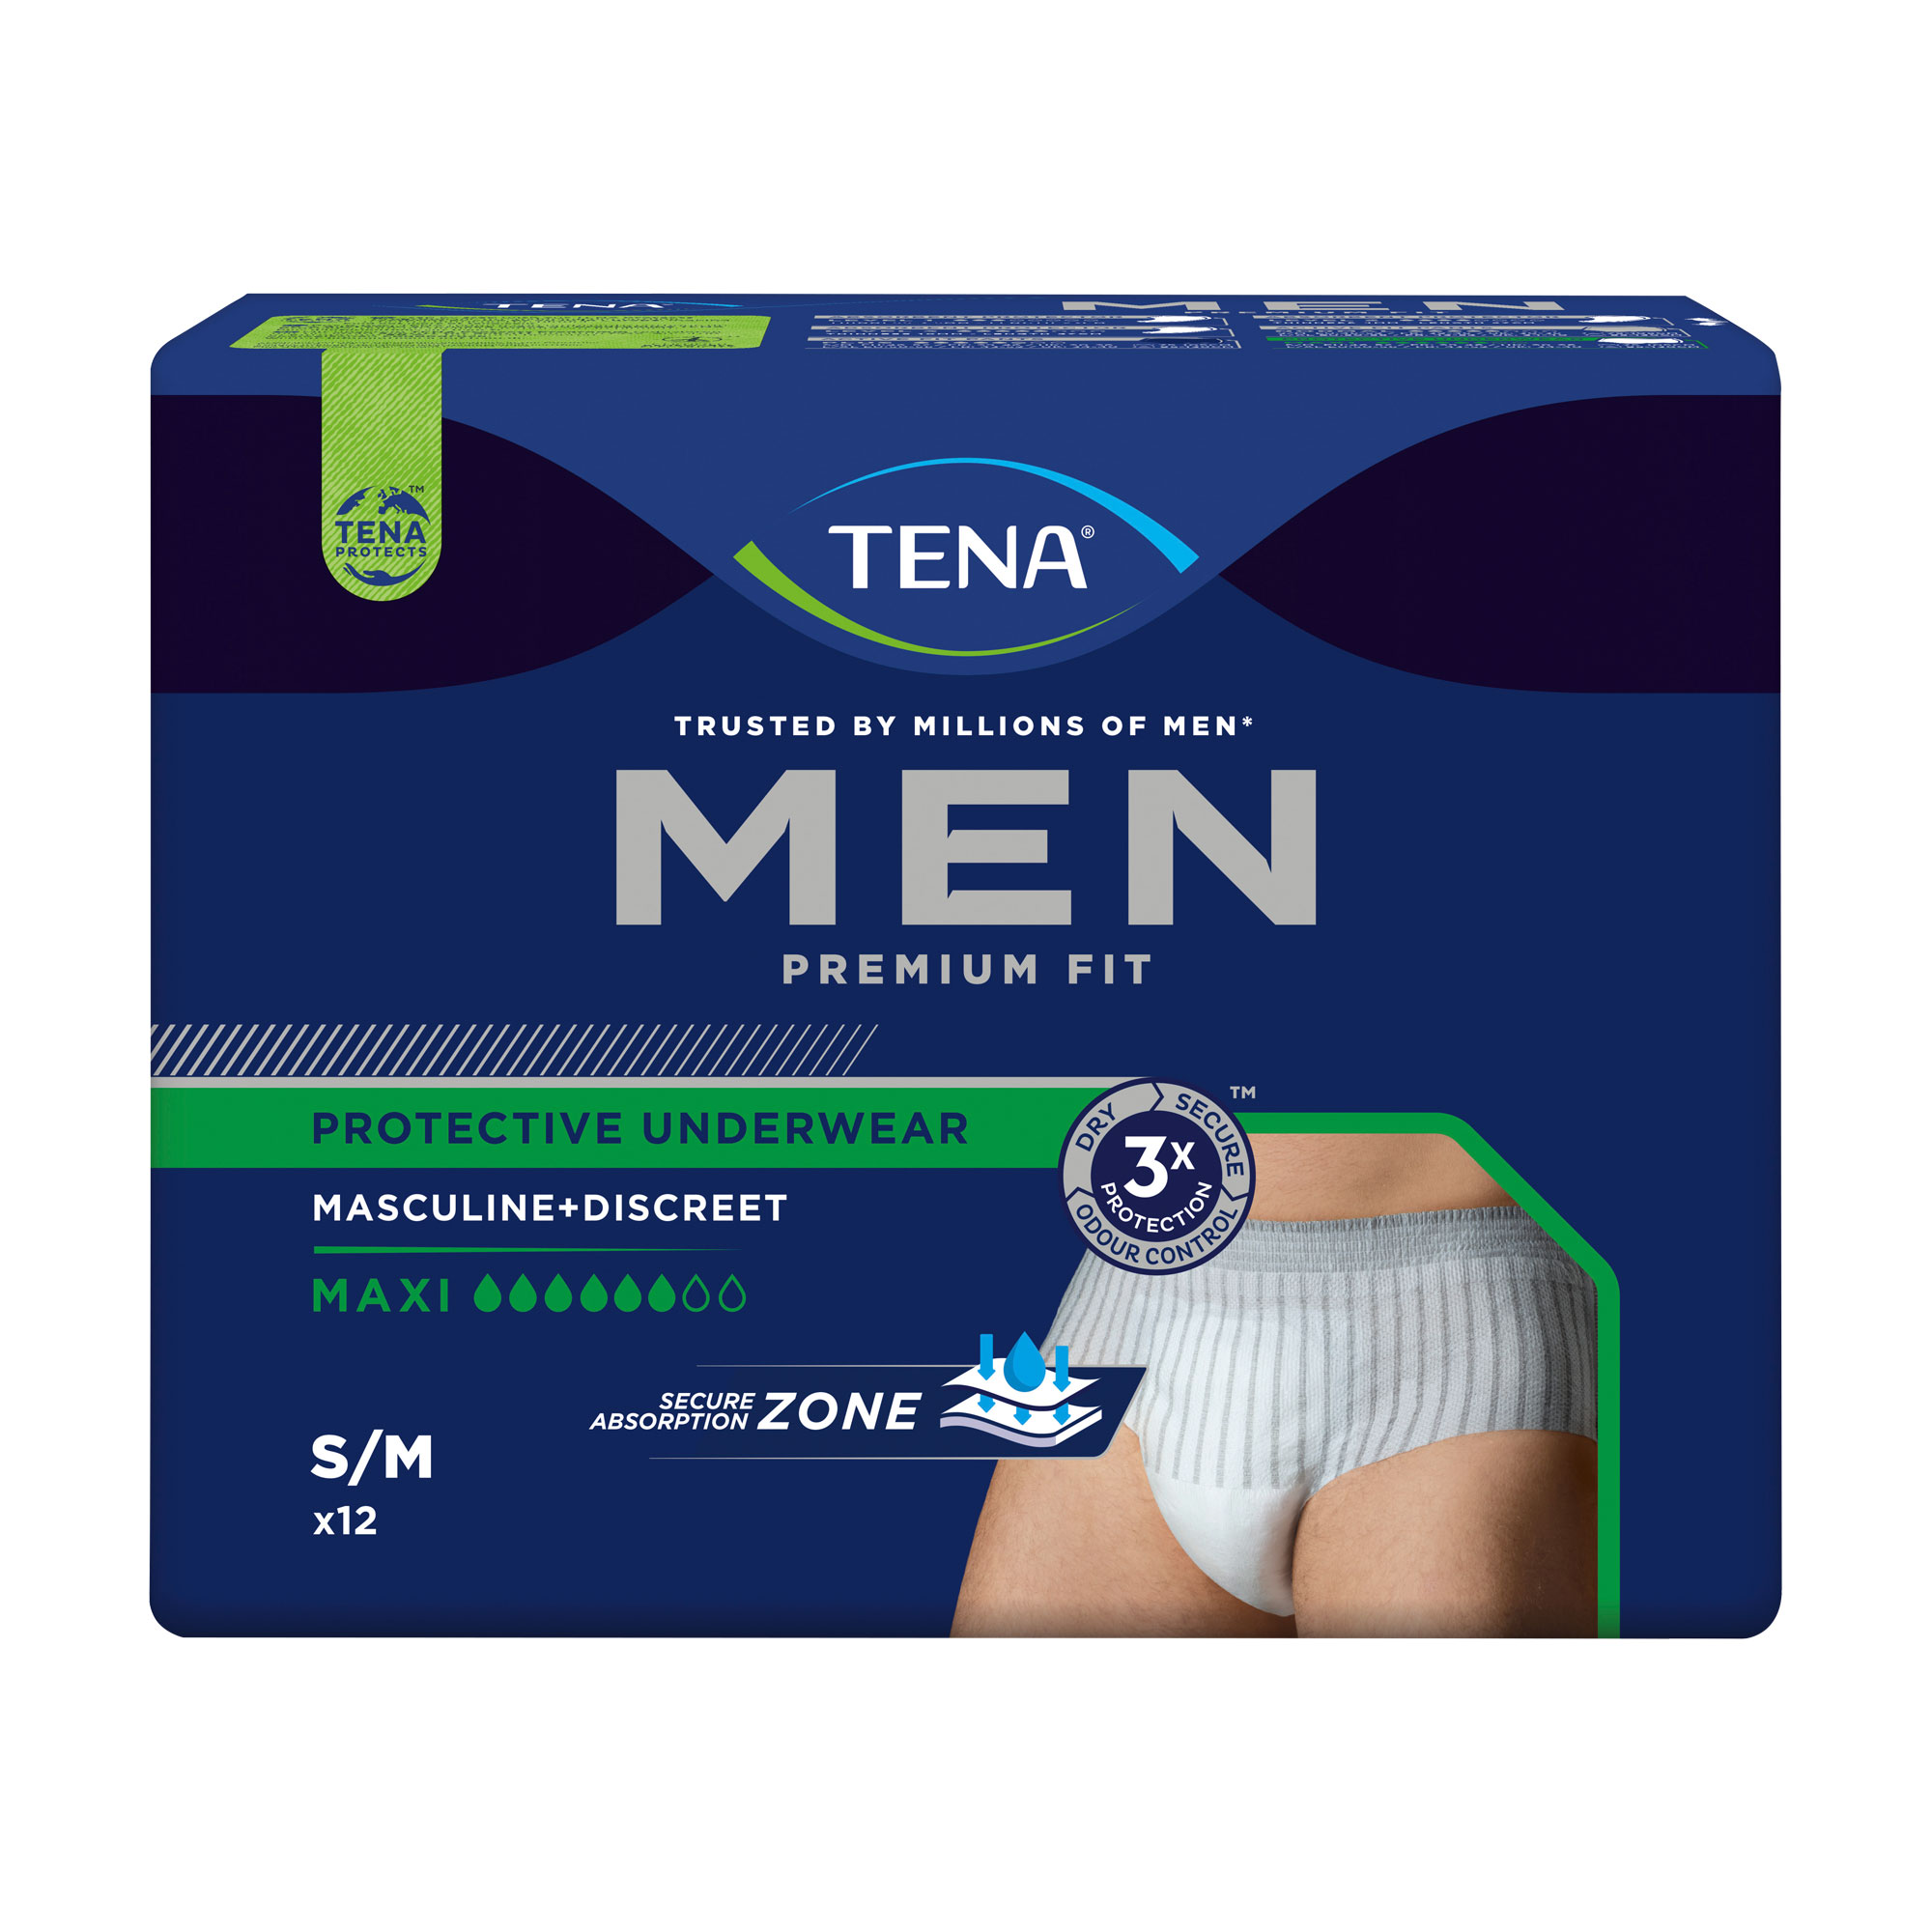 Einweg-Pants für Männer. Sicherer Schutz bei starkem Harnverlust. Größe: S/M.